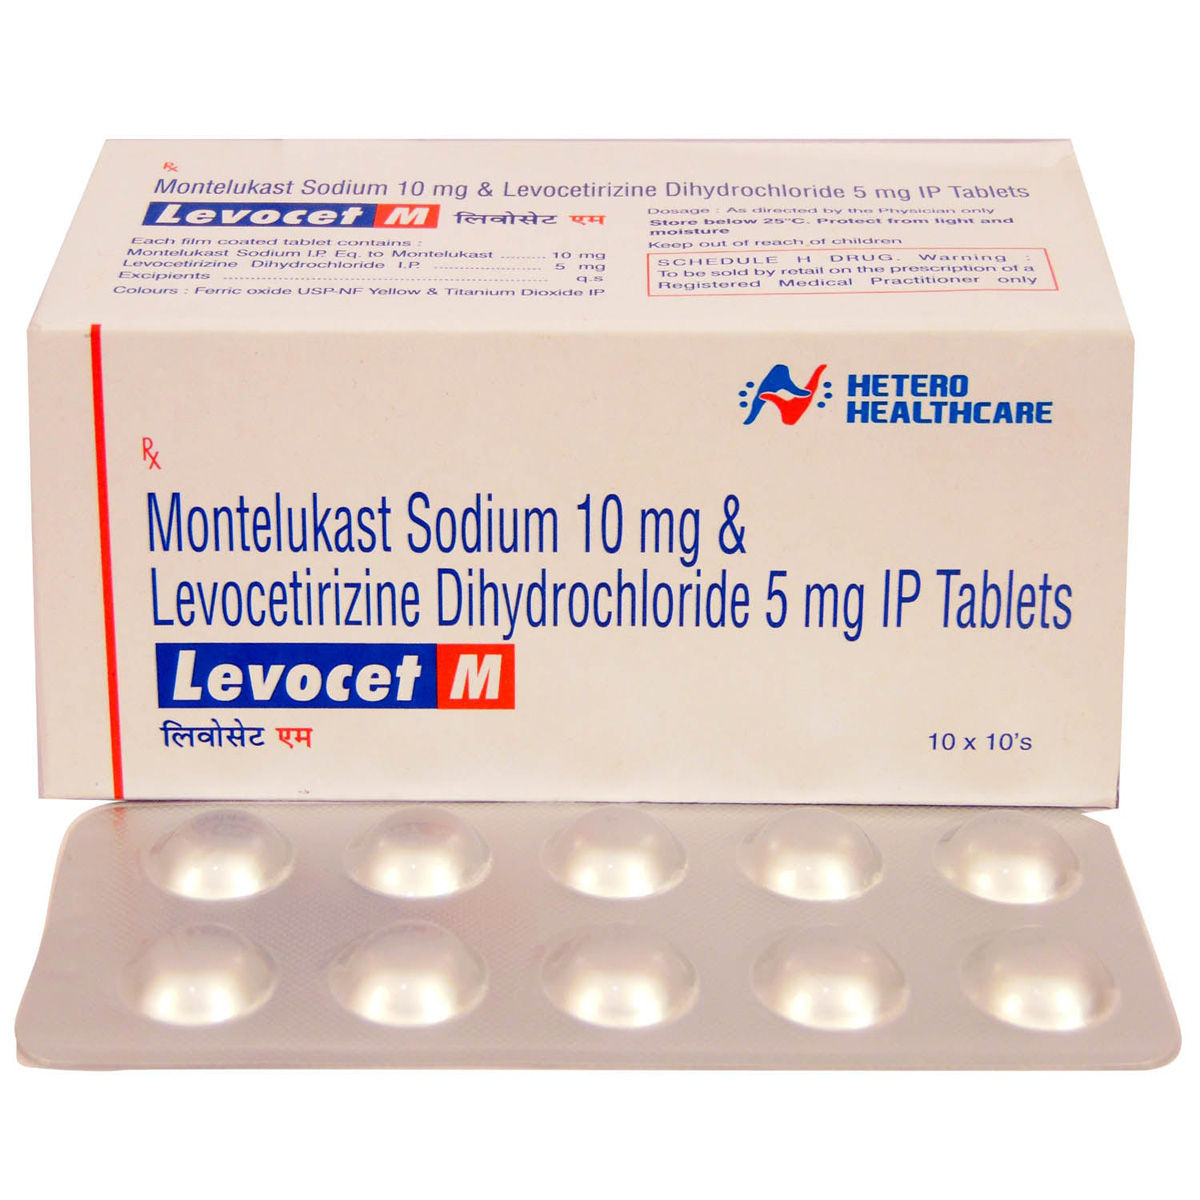 Levocet M Tablet 10's, Pack of 10 TABLET MDS